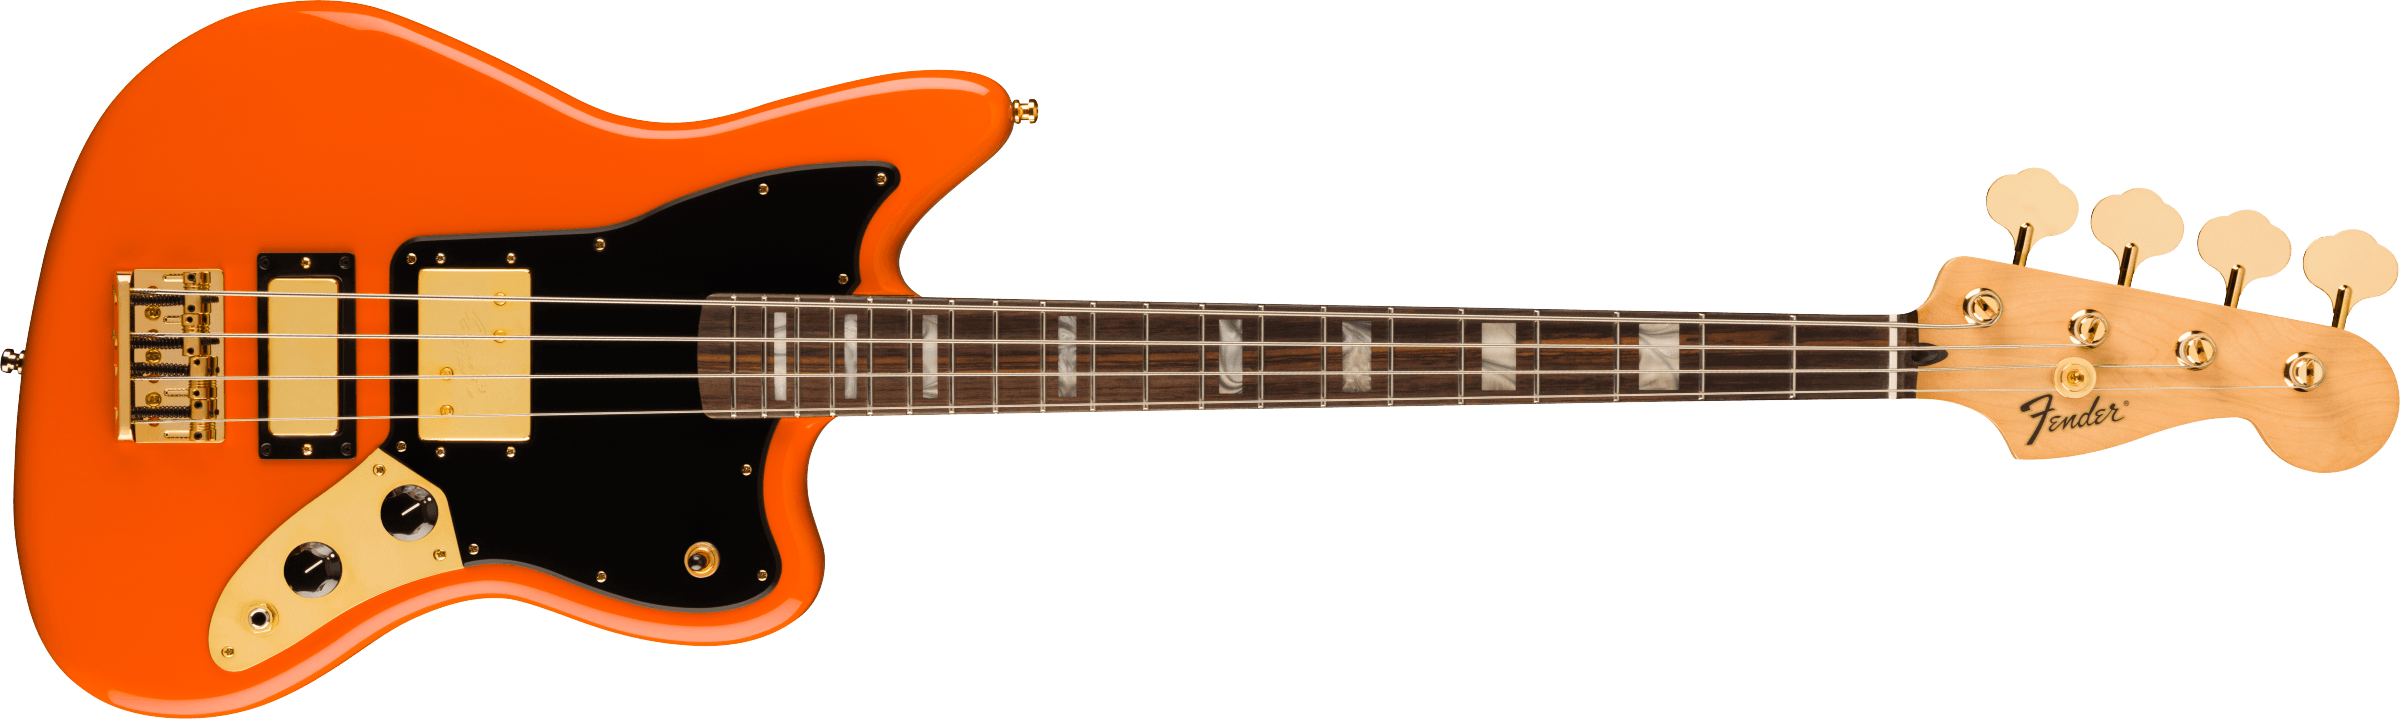 FENDER Limited Edition Mike Kerr Jaguar Bass, Rosewood Fingerboard, Tiger's Blood Orange 0149460382